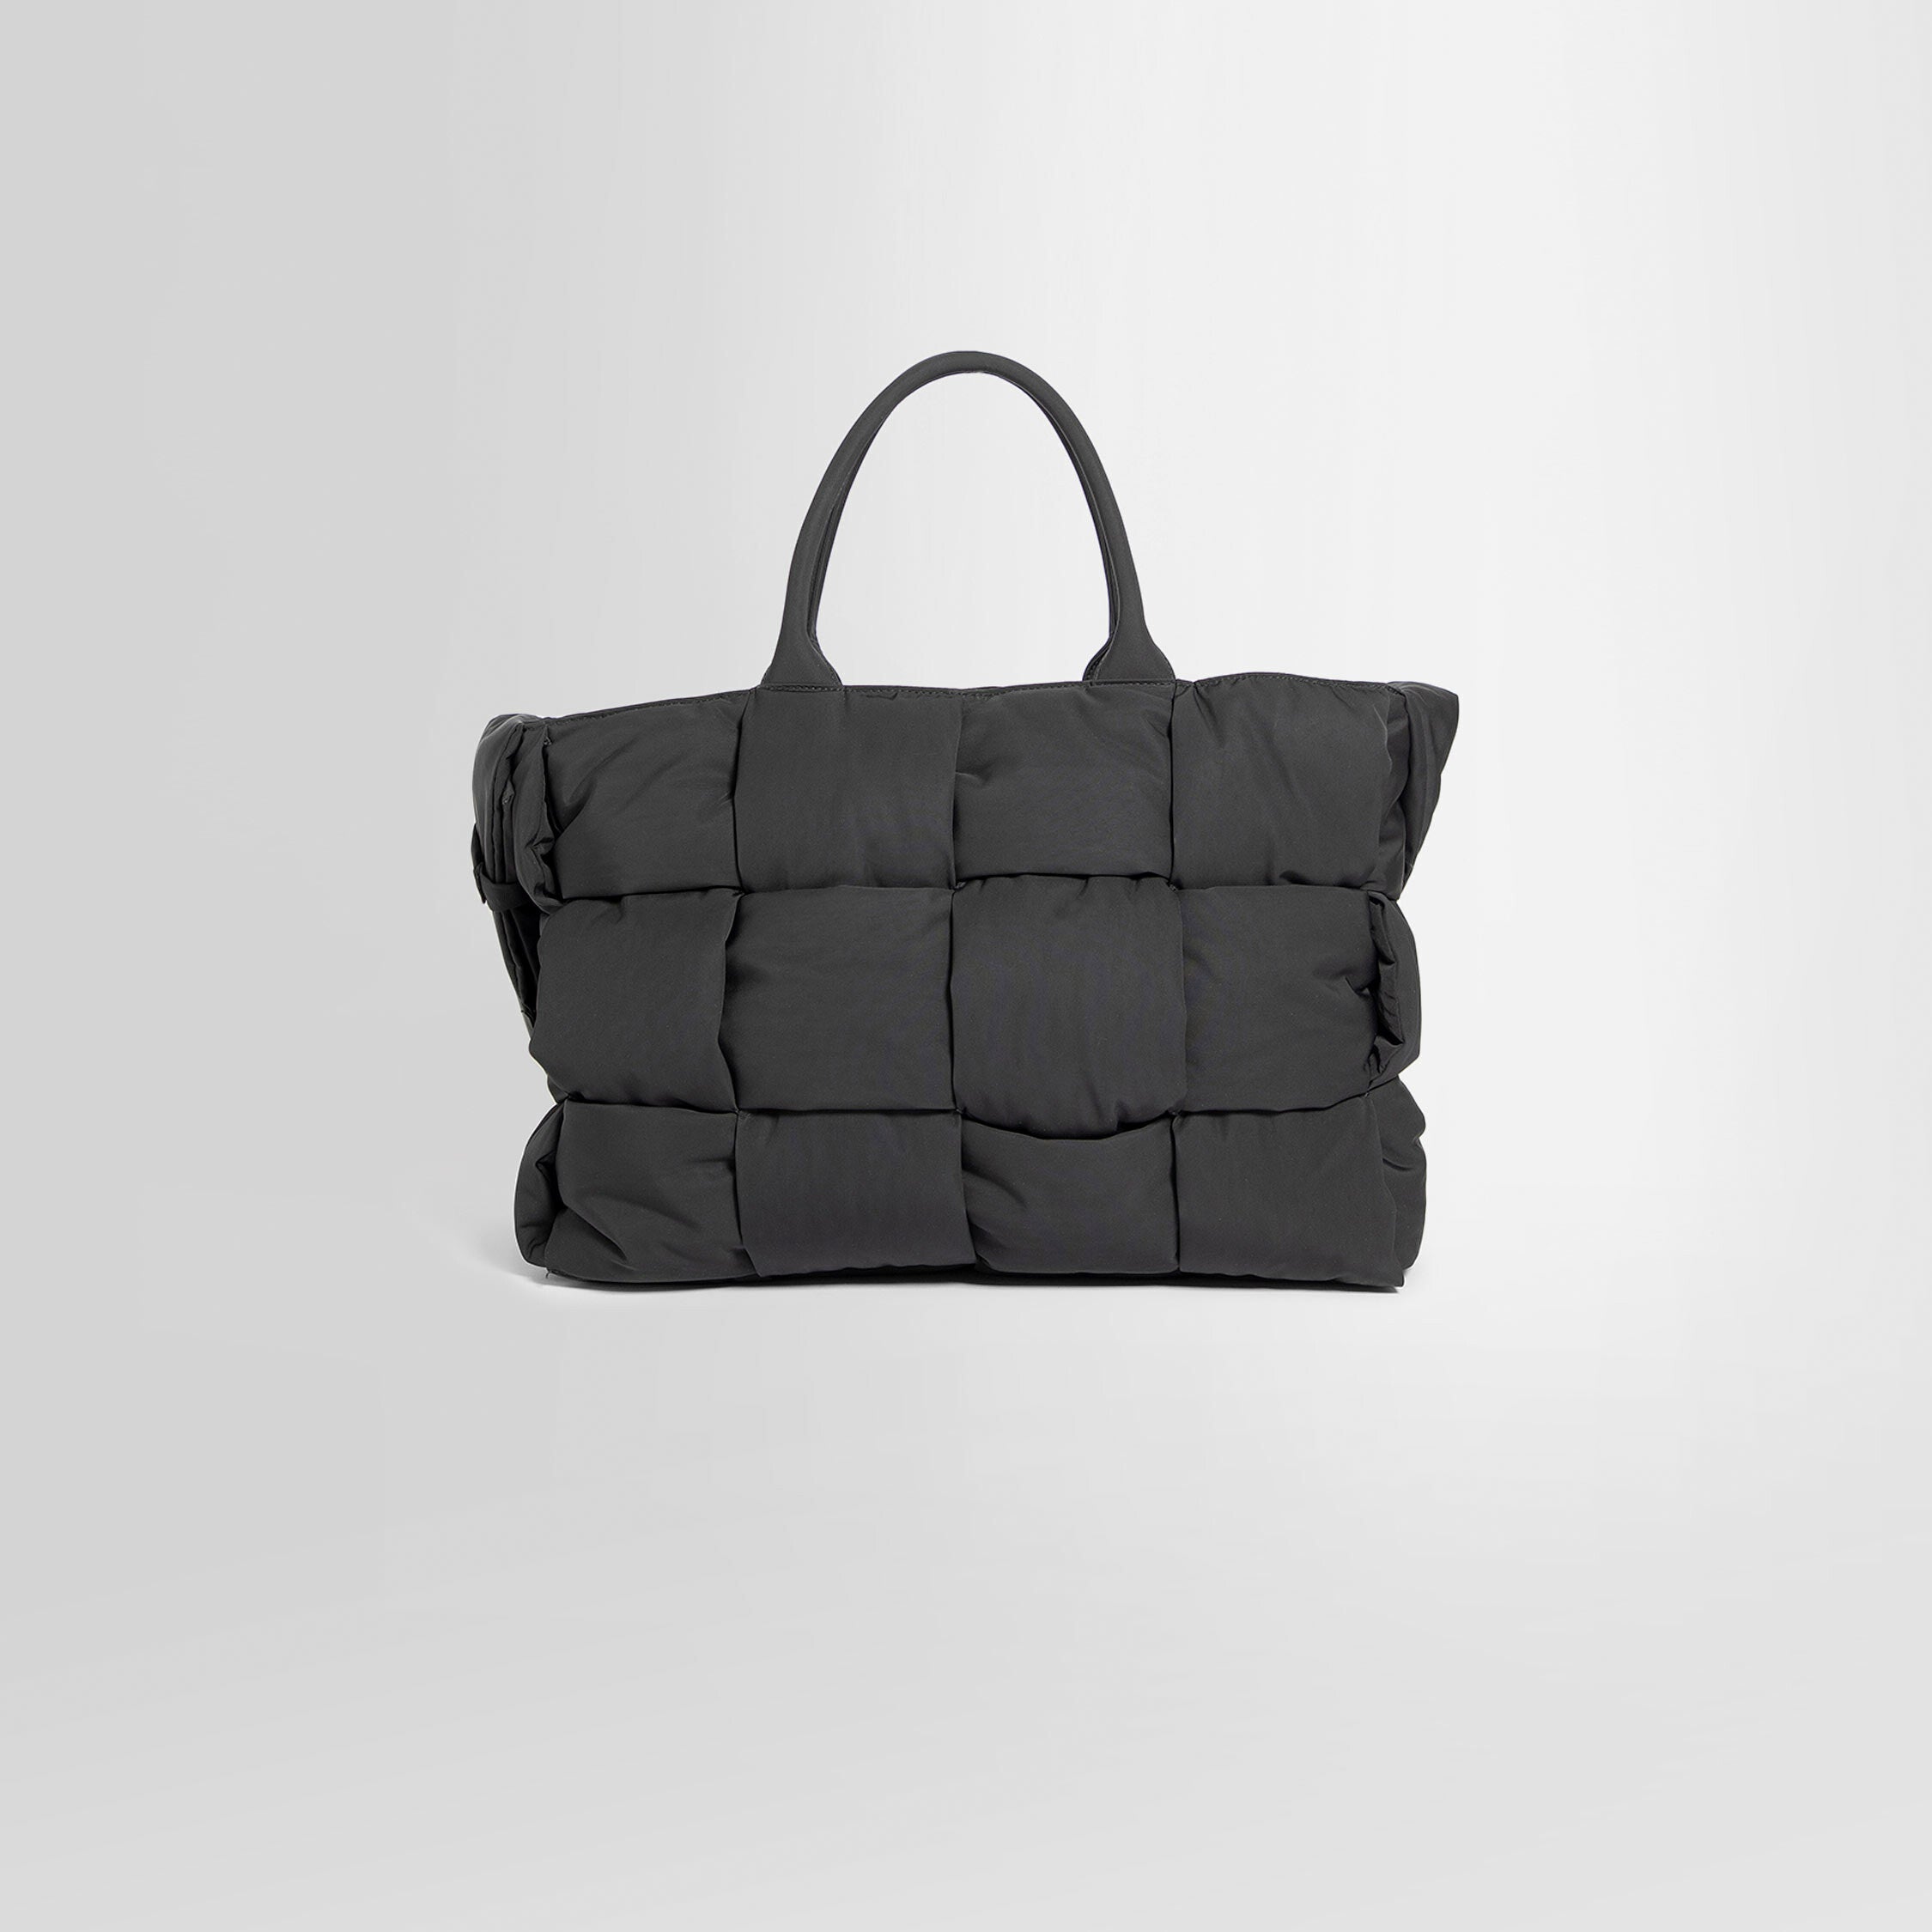 Bottega Veneta® Men's Alto Zipped Tote in Parakeet / Black / White. Shop  online now.